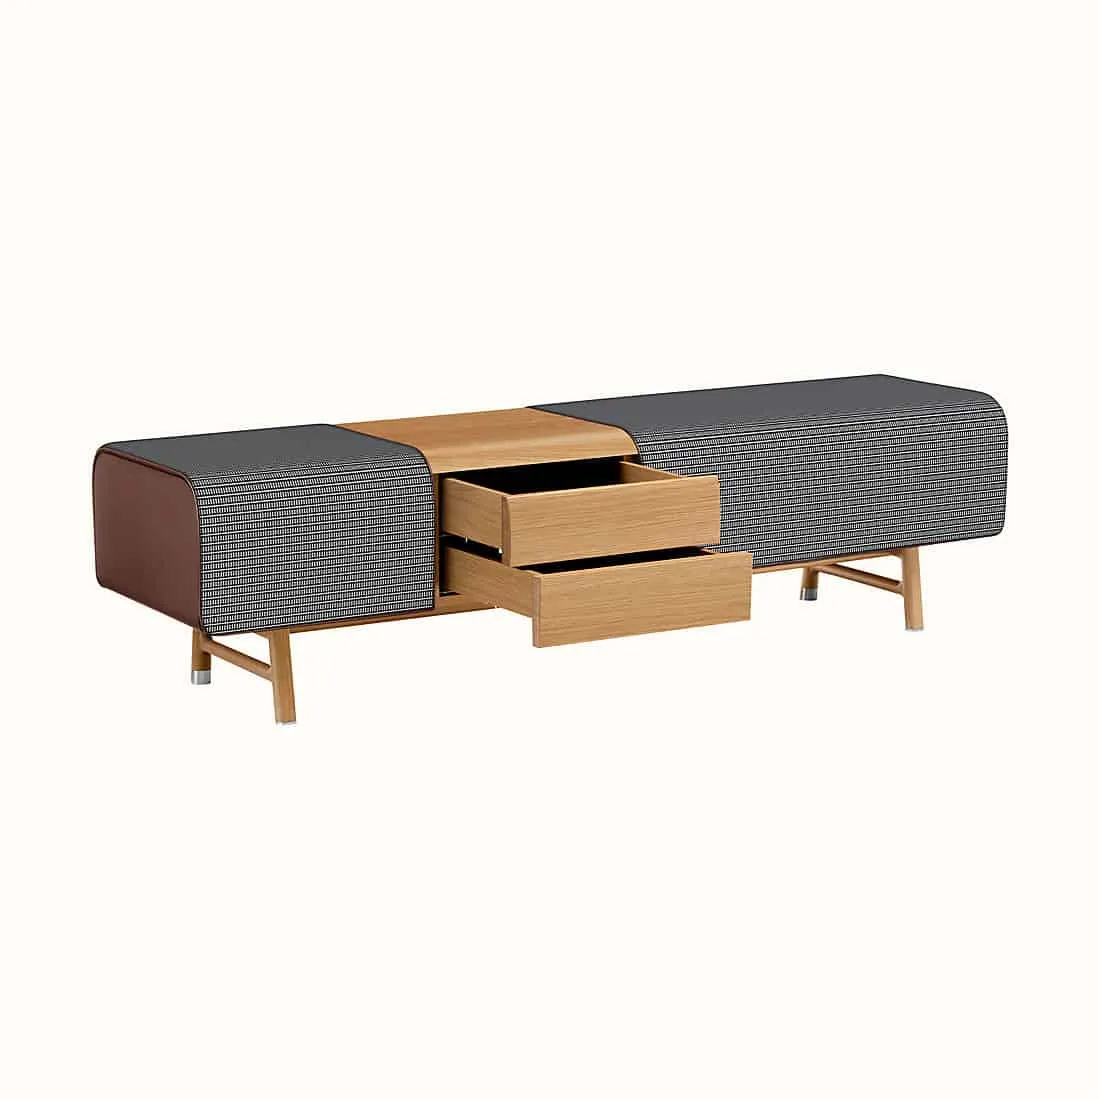 Designer Furniture for Living Room _ Hermes_les-necessaires-d-hermes-long-bench